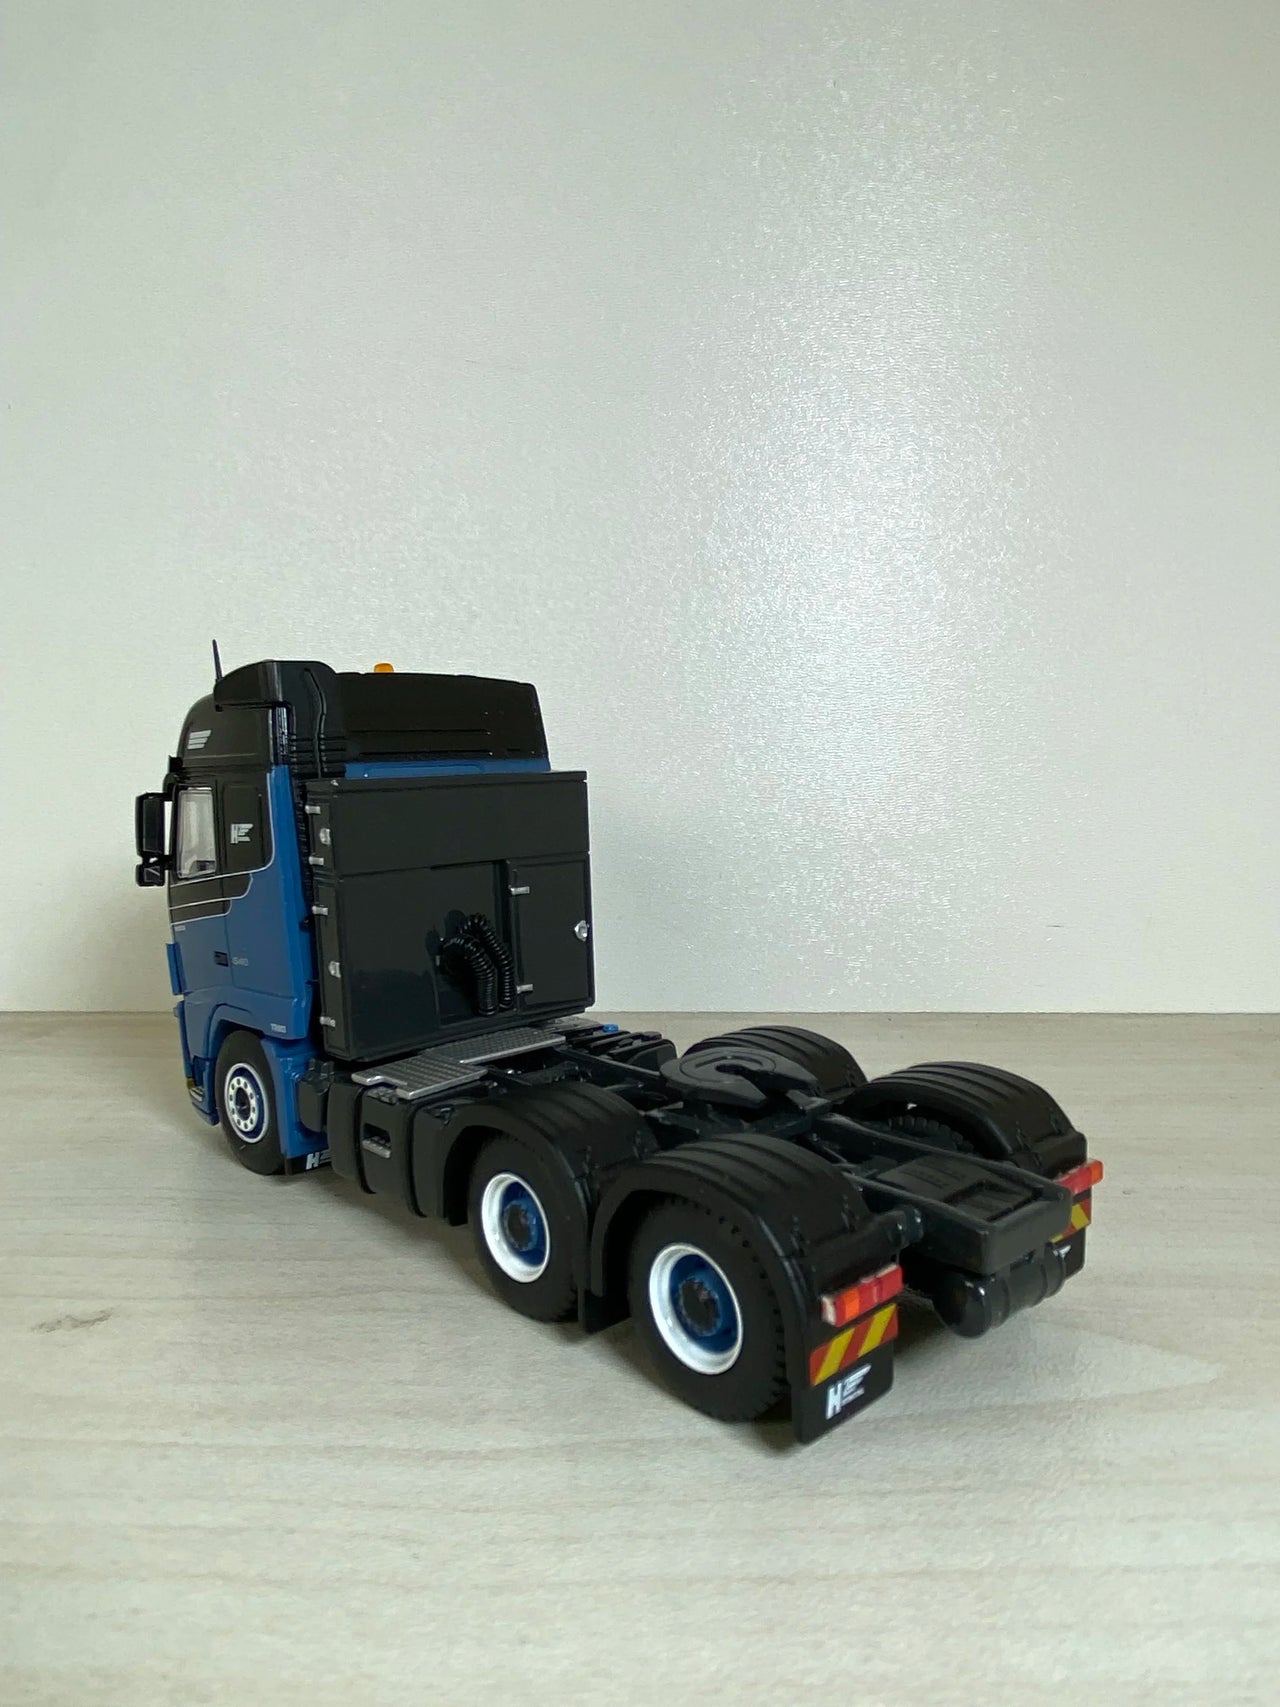 33-0018 वोल्वो एच2 इंटरनेशनल ट्रैक्टर ट्रक स्केल 1:50 (बंद मॉडल)